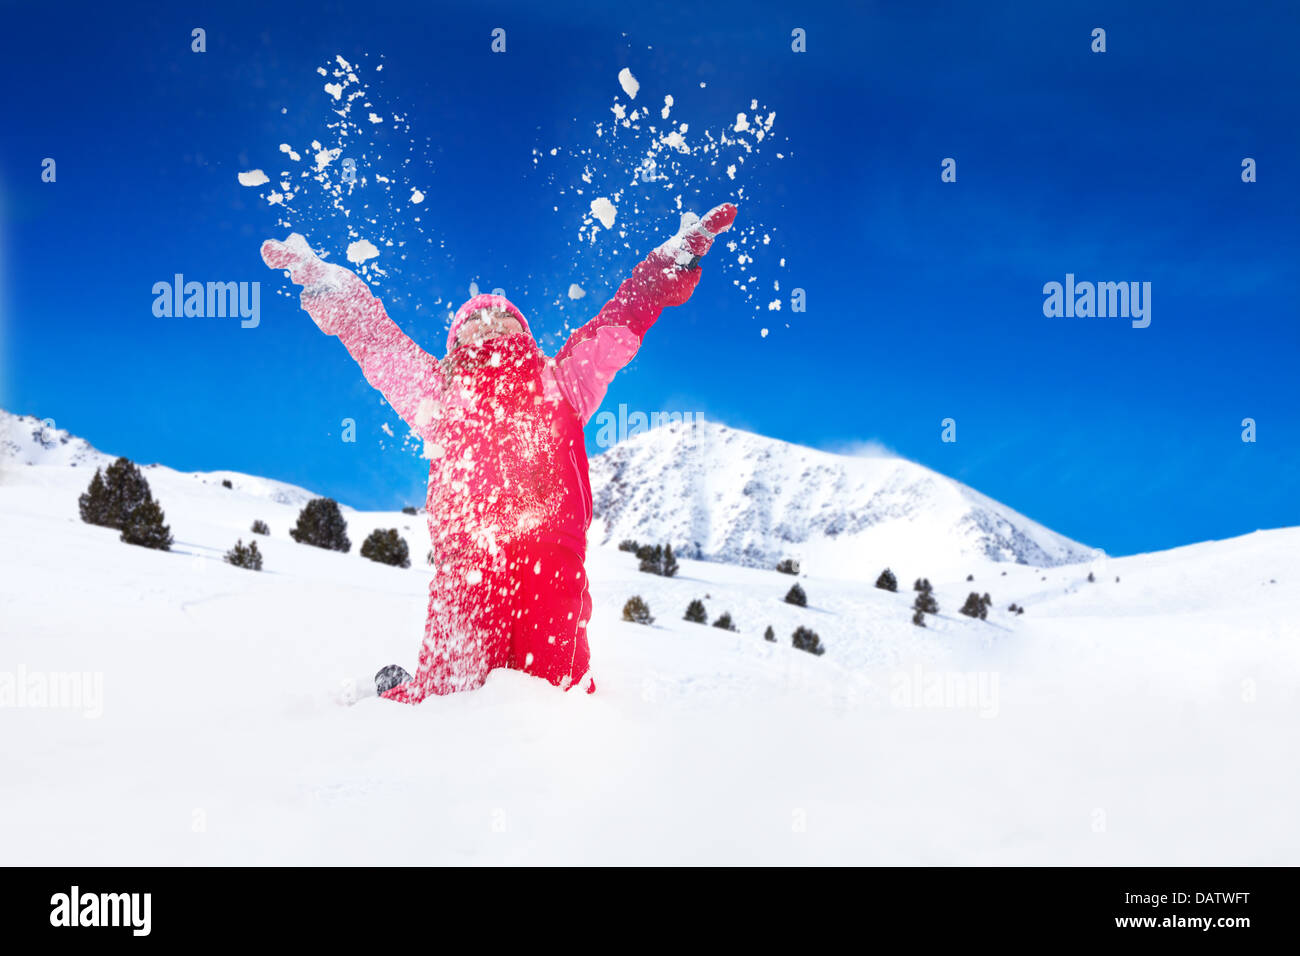 Poco feliz chica sonriente arroja nieve en el aire con copos de nieve volando en todas direcciones Foto de stock